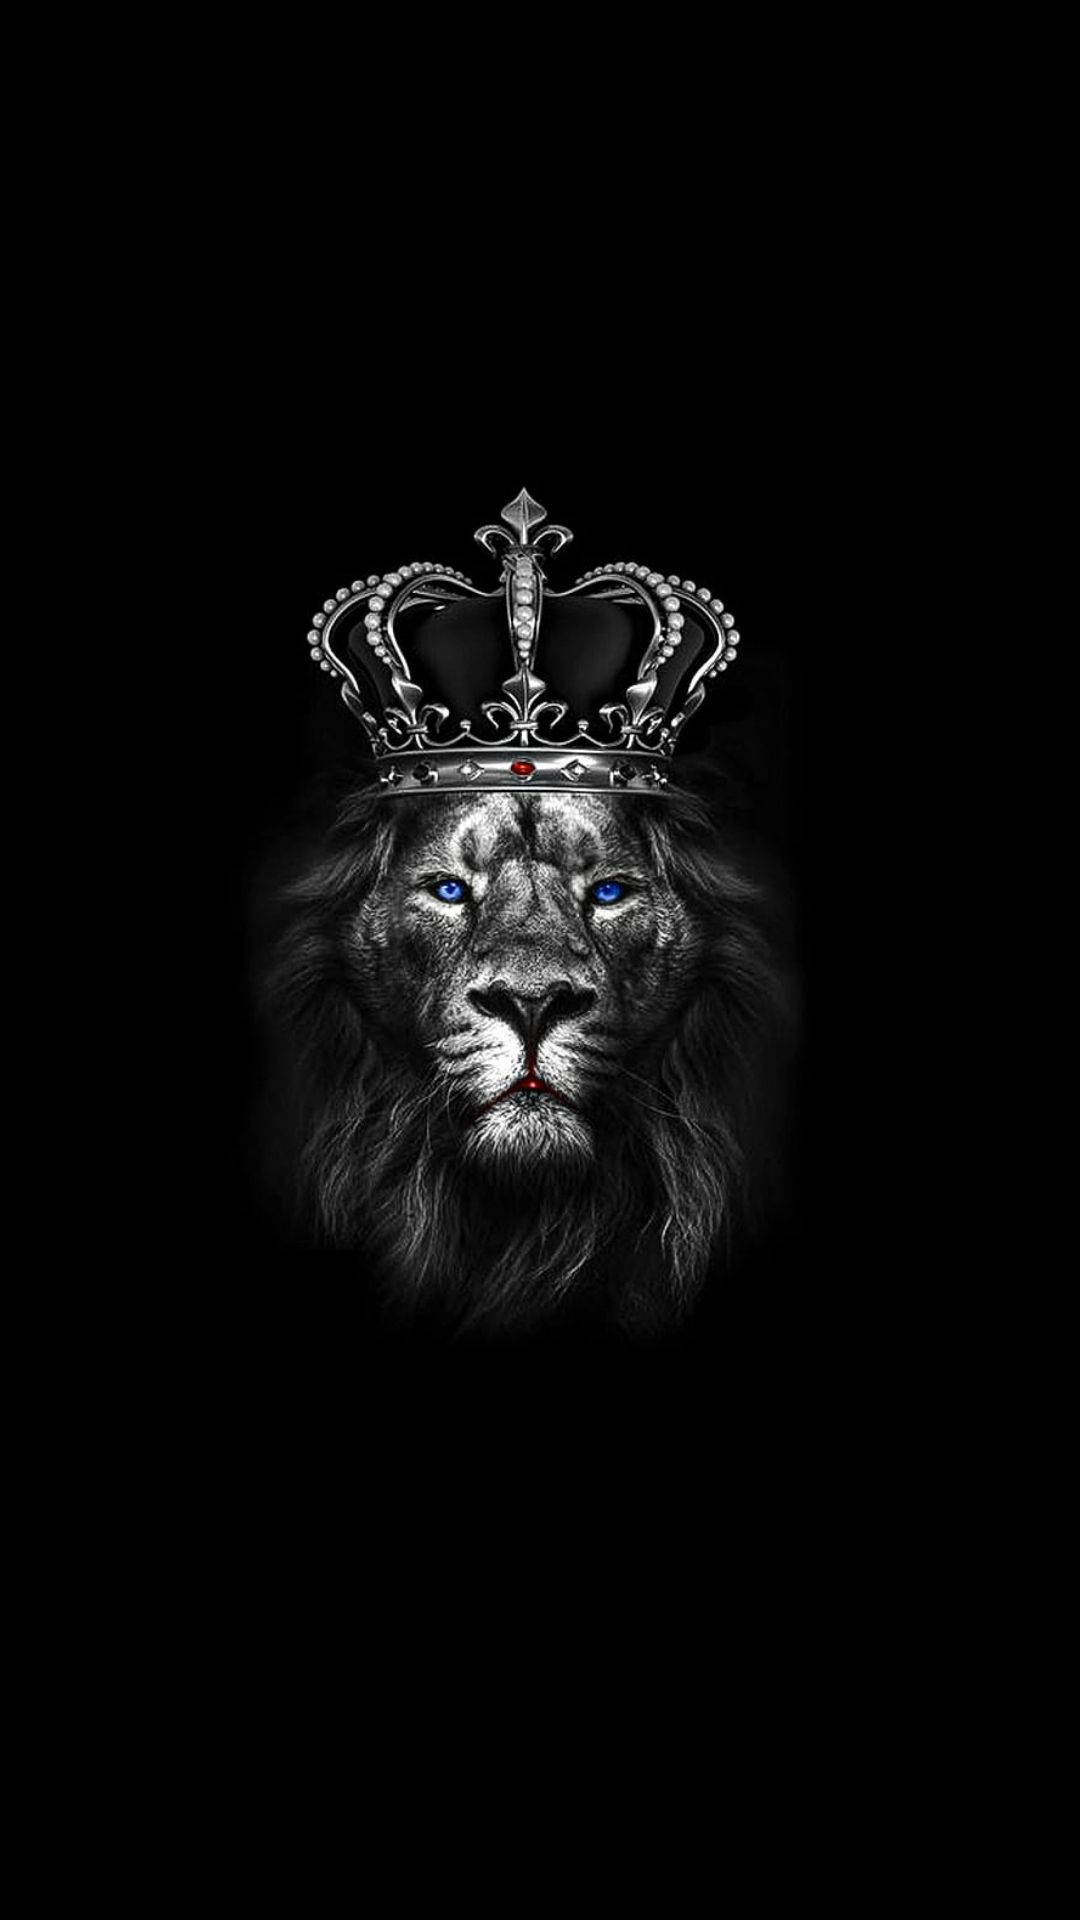 Fierce Lion King Wallpaper